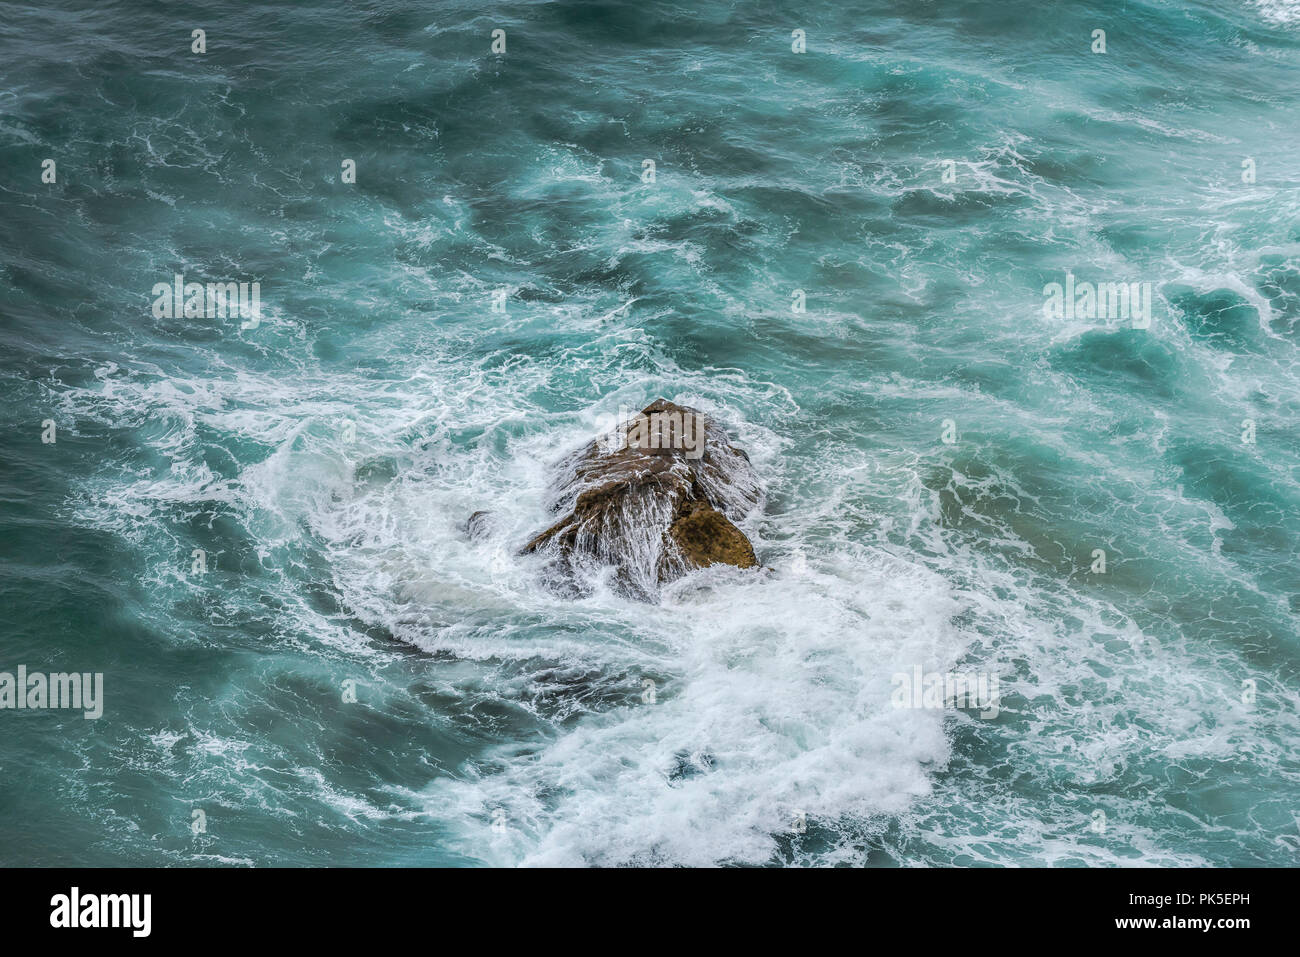 A rock in a choppy swirling sea. Stock Photo